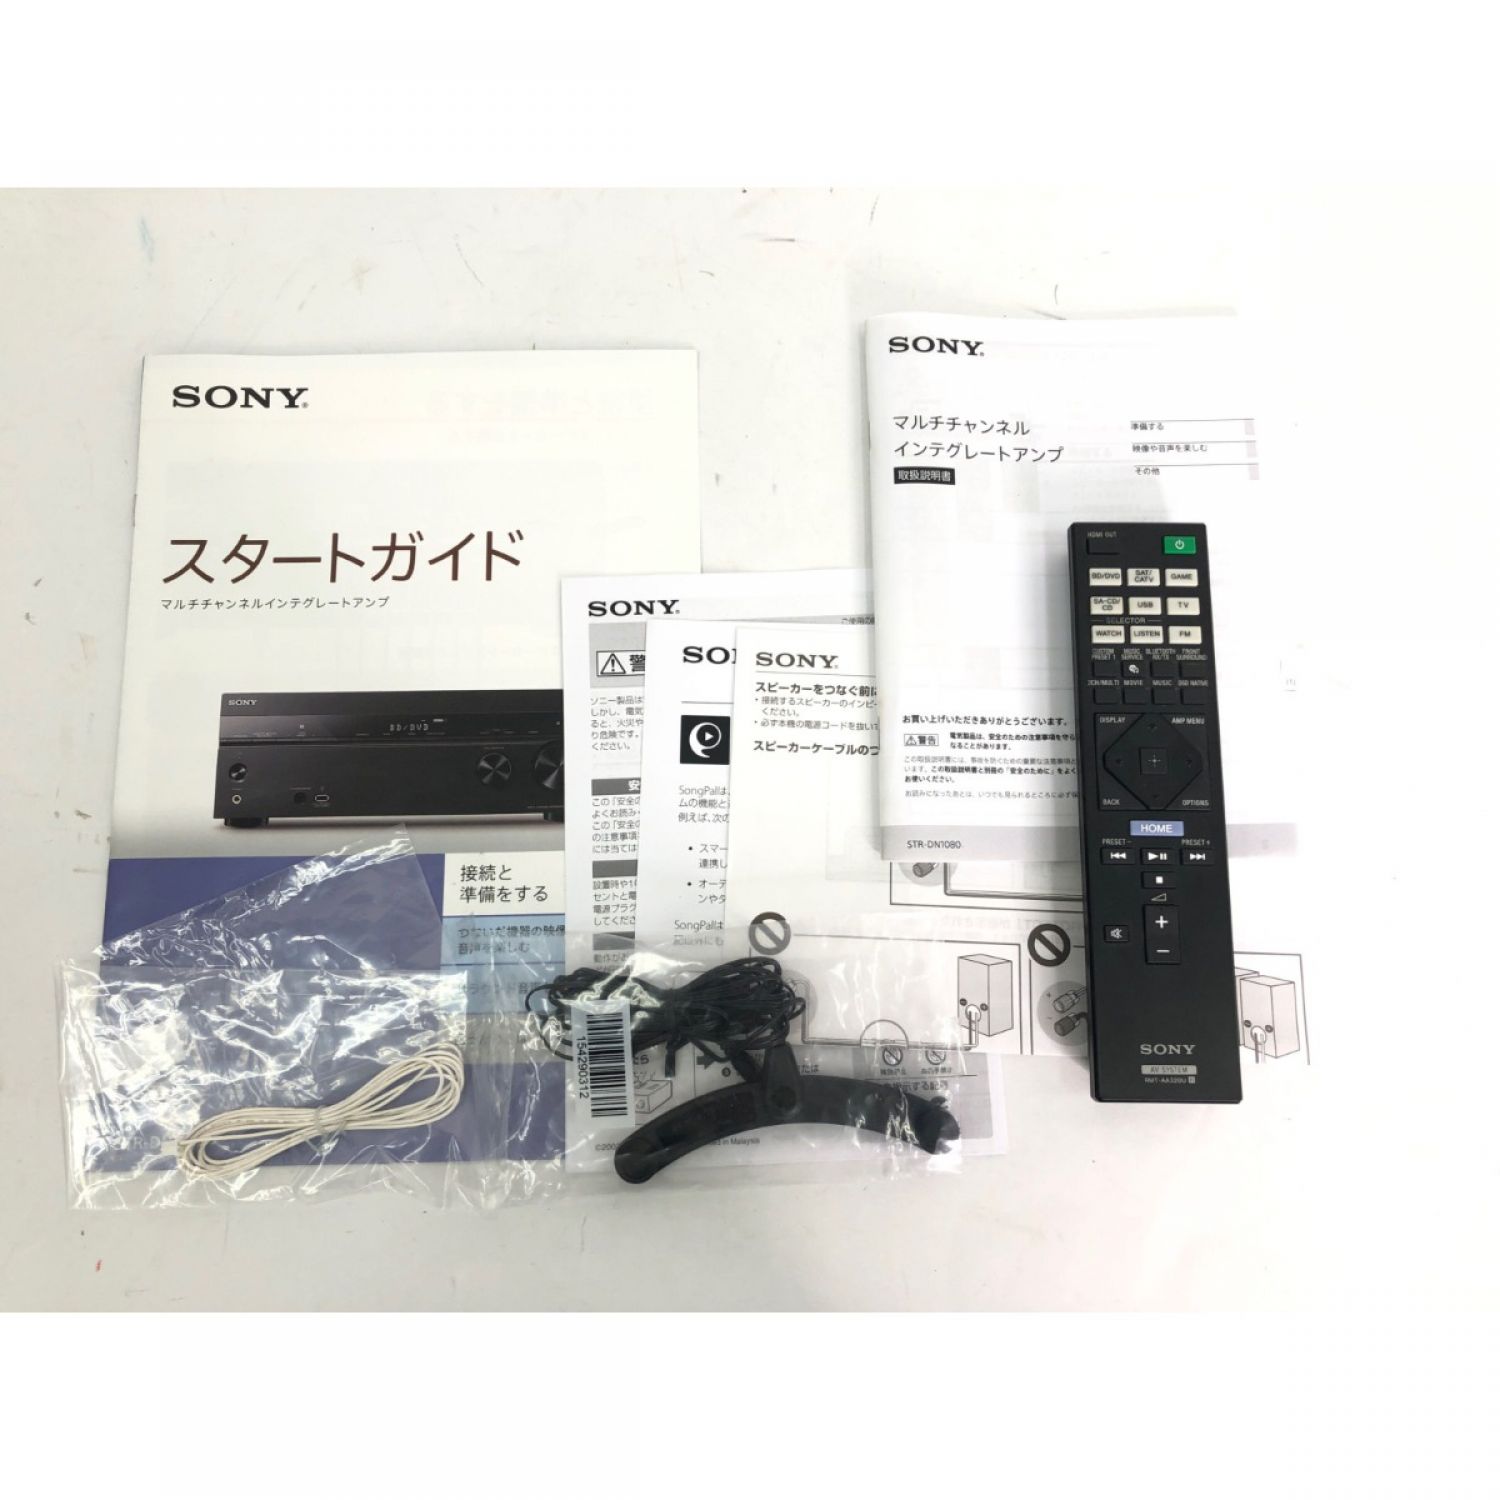 ソニー　SONY 7.1chマルチチャンネル AVアンプ STR-DN1080